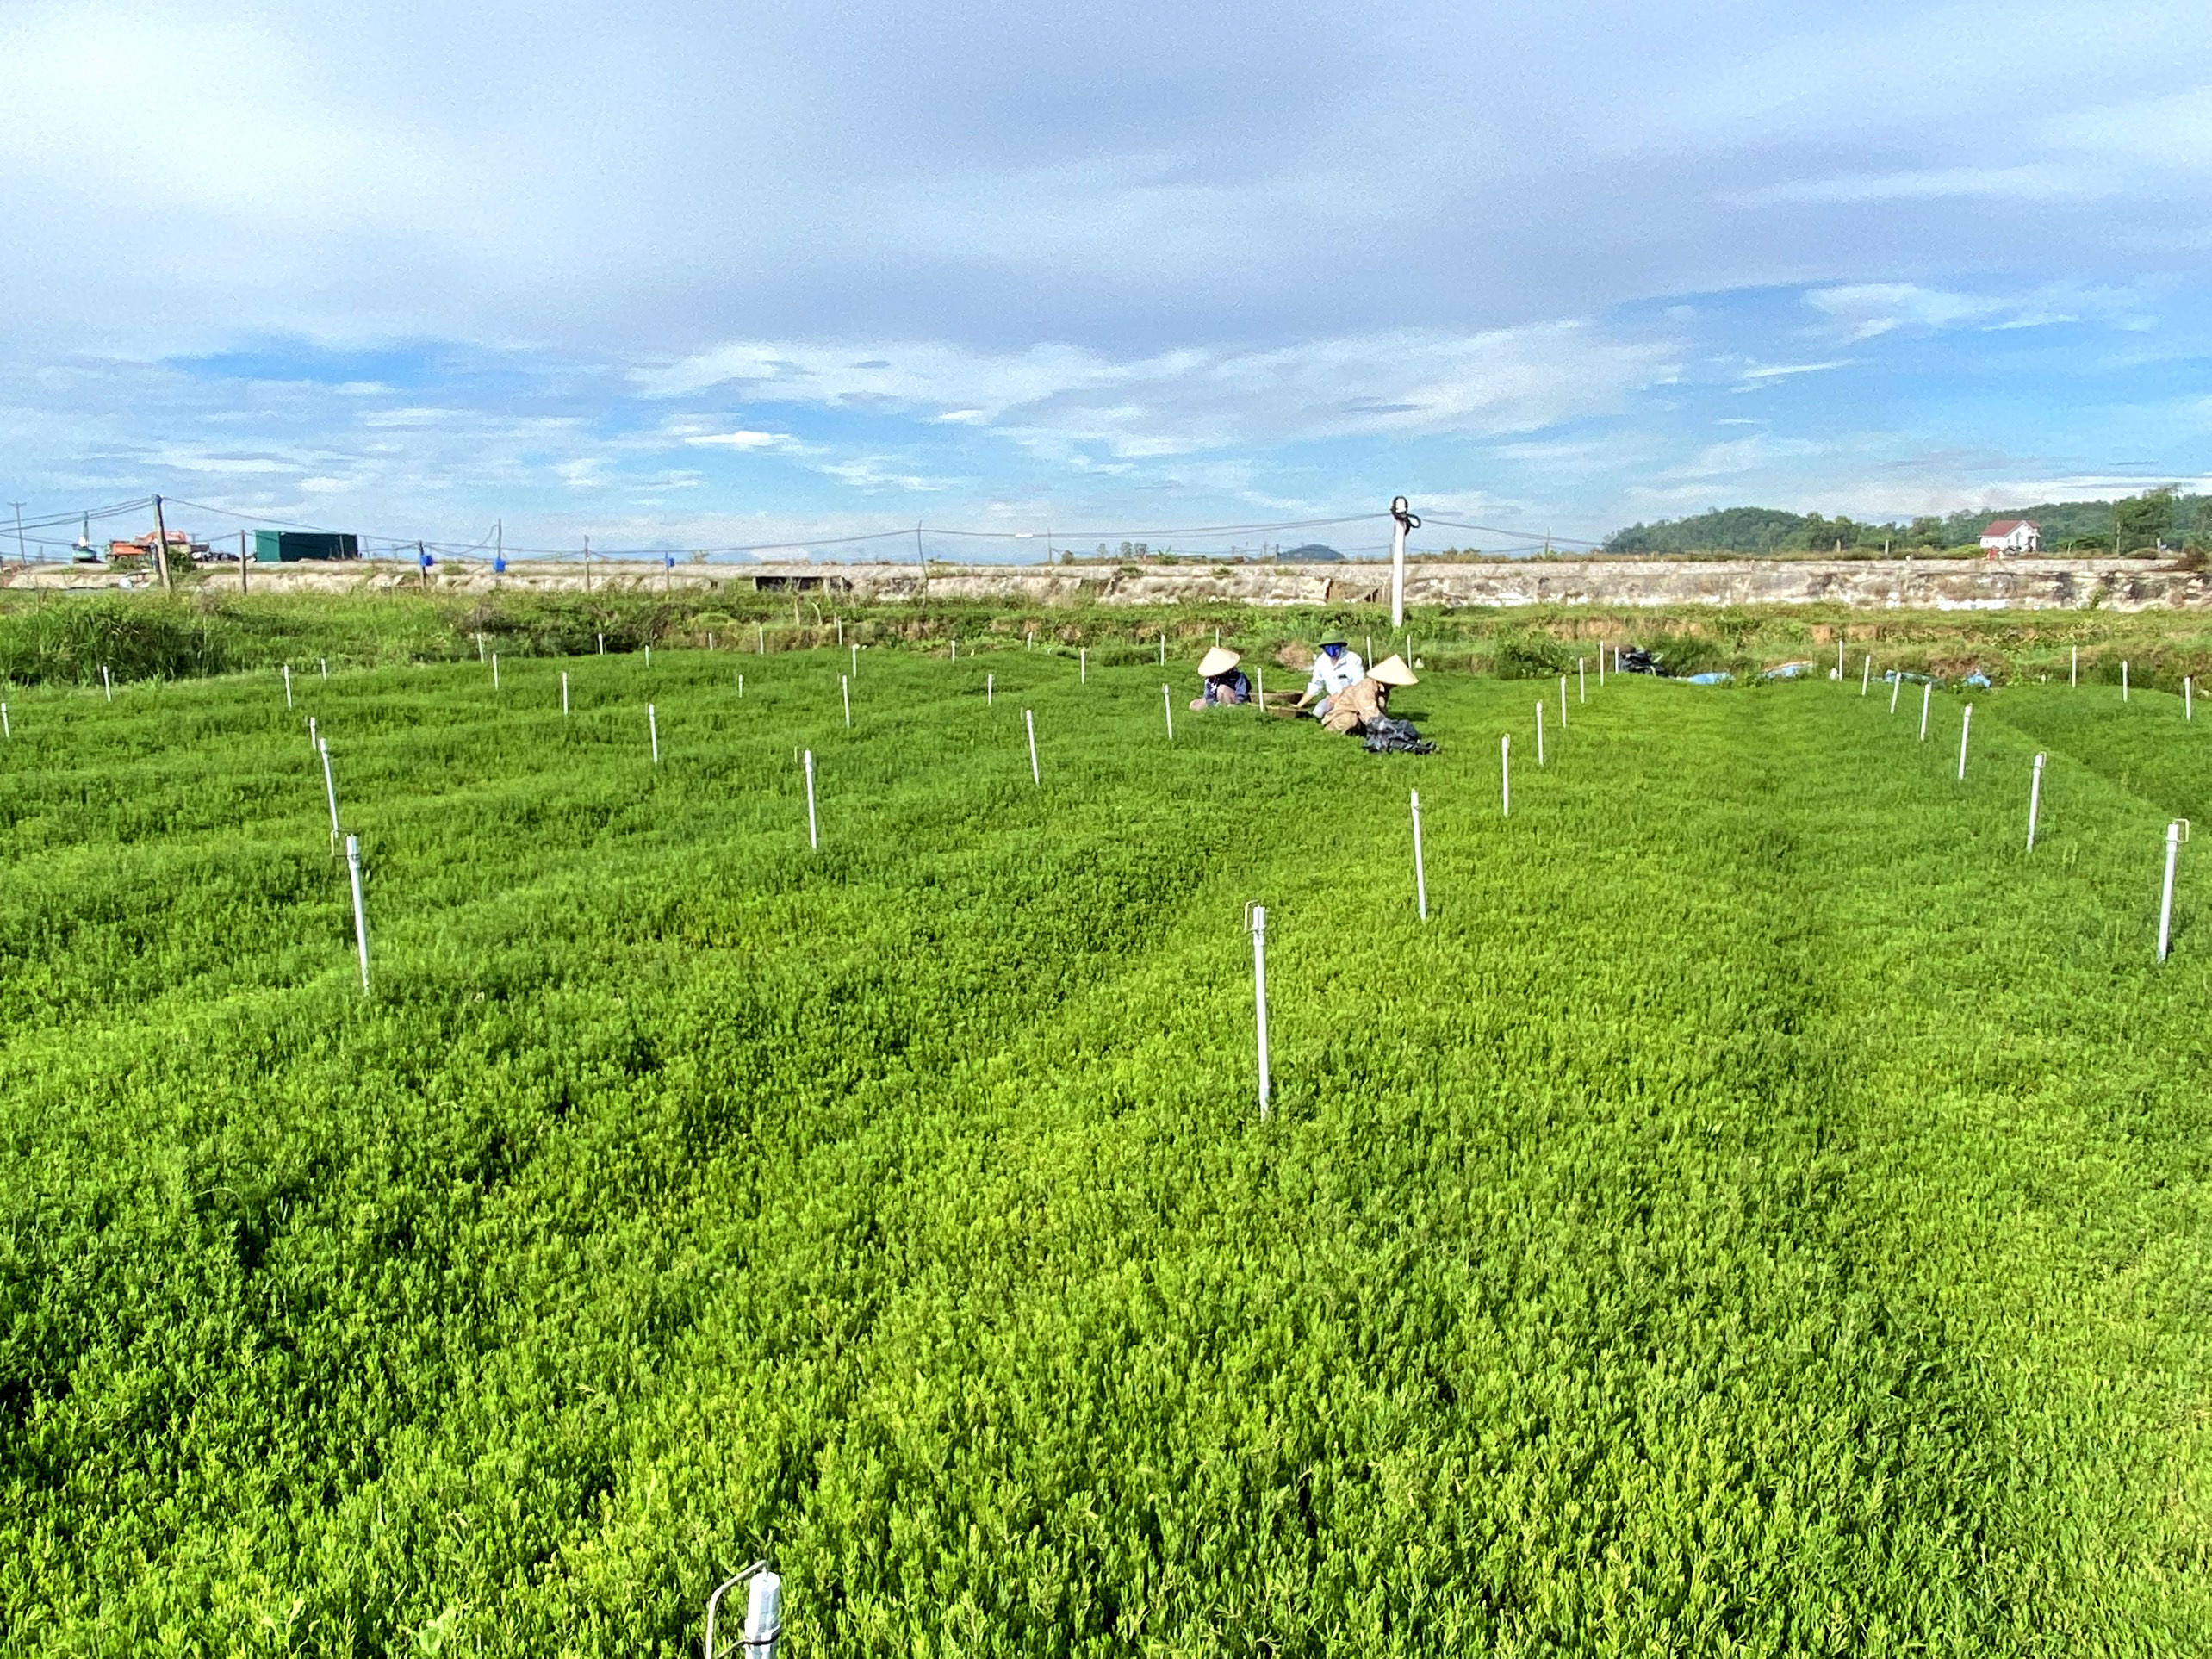 Mô hình trồng rau nhót trên đất nhiễm mặn ở phường Mai Hùng (TX.Hoàng Mai) đang được xem là một trong những giải pháp về chuyển đổi cơ cấu cây trồng thích nghi với biến đổi khí hậu. Ảnh: Thanh Phúc